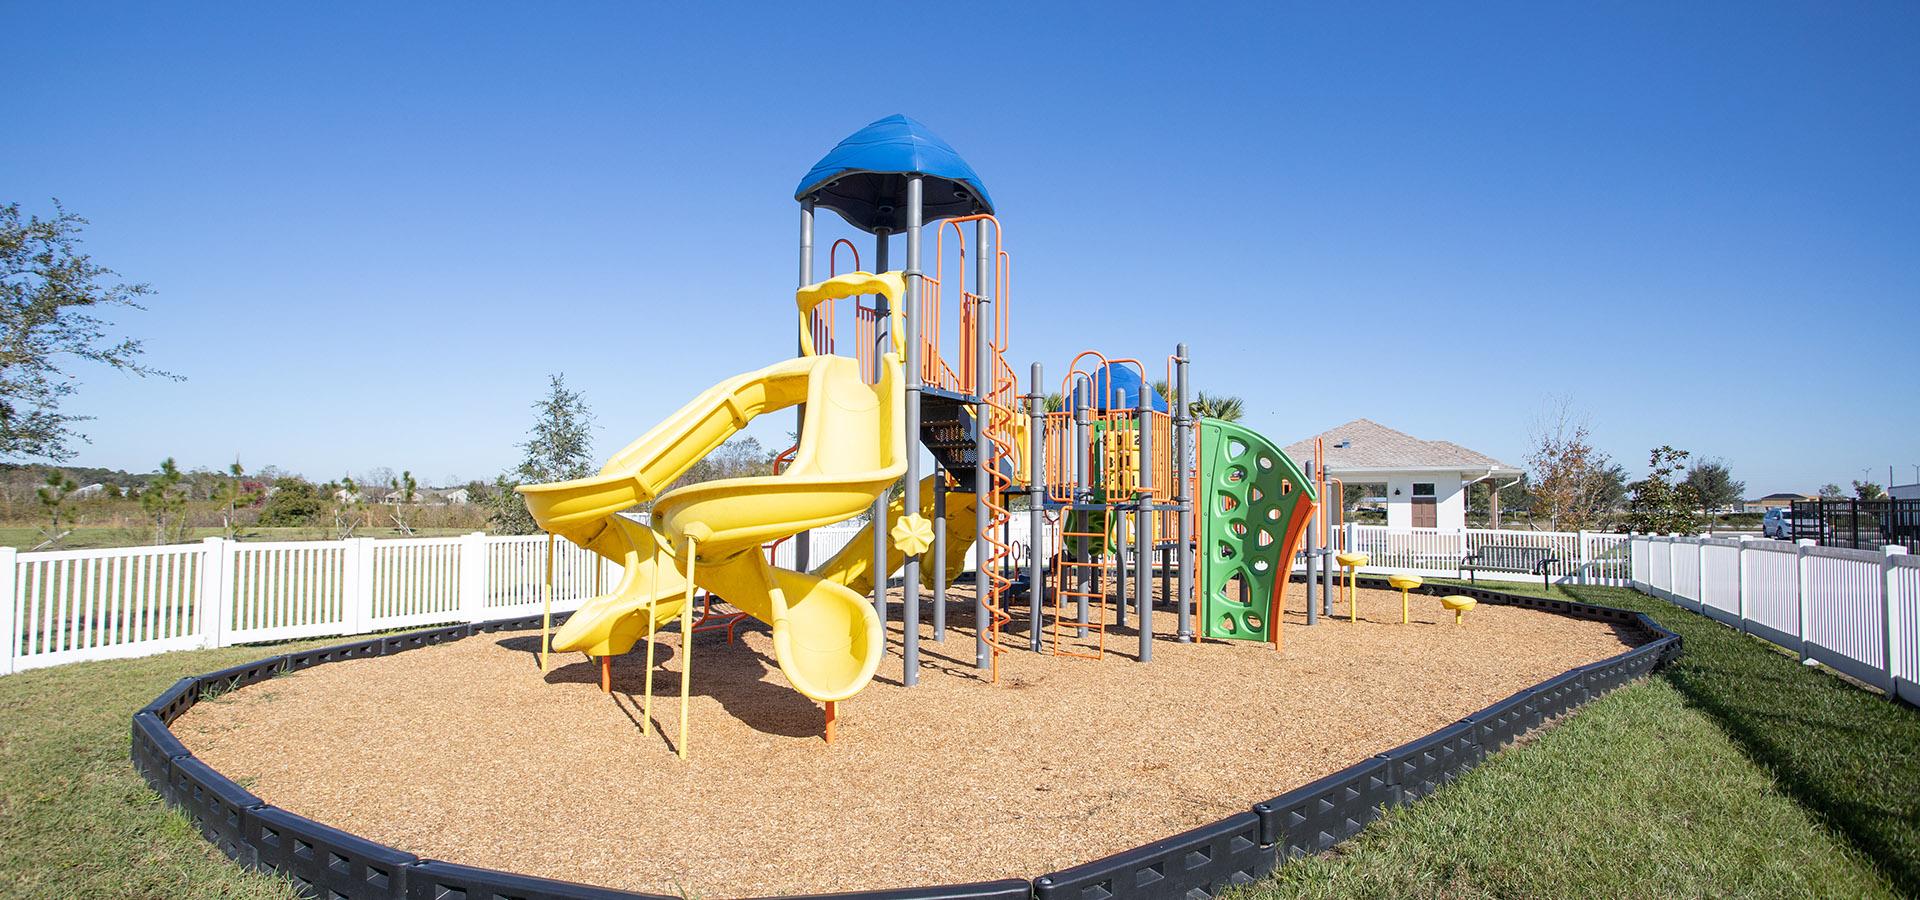 Children's playground area in Zephyrhills FL